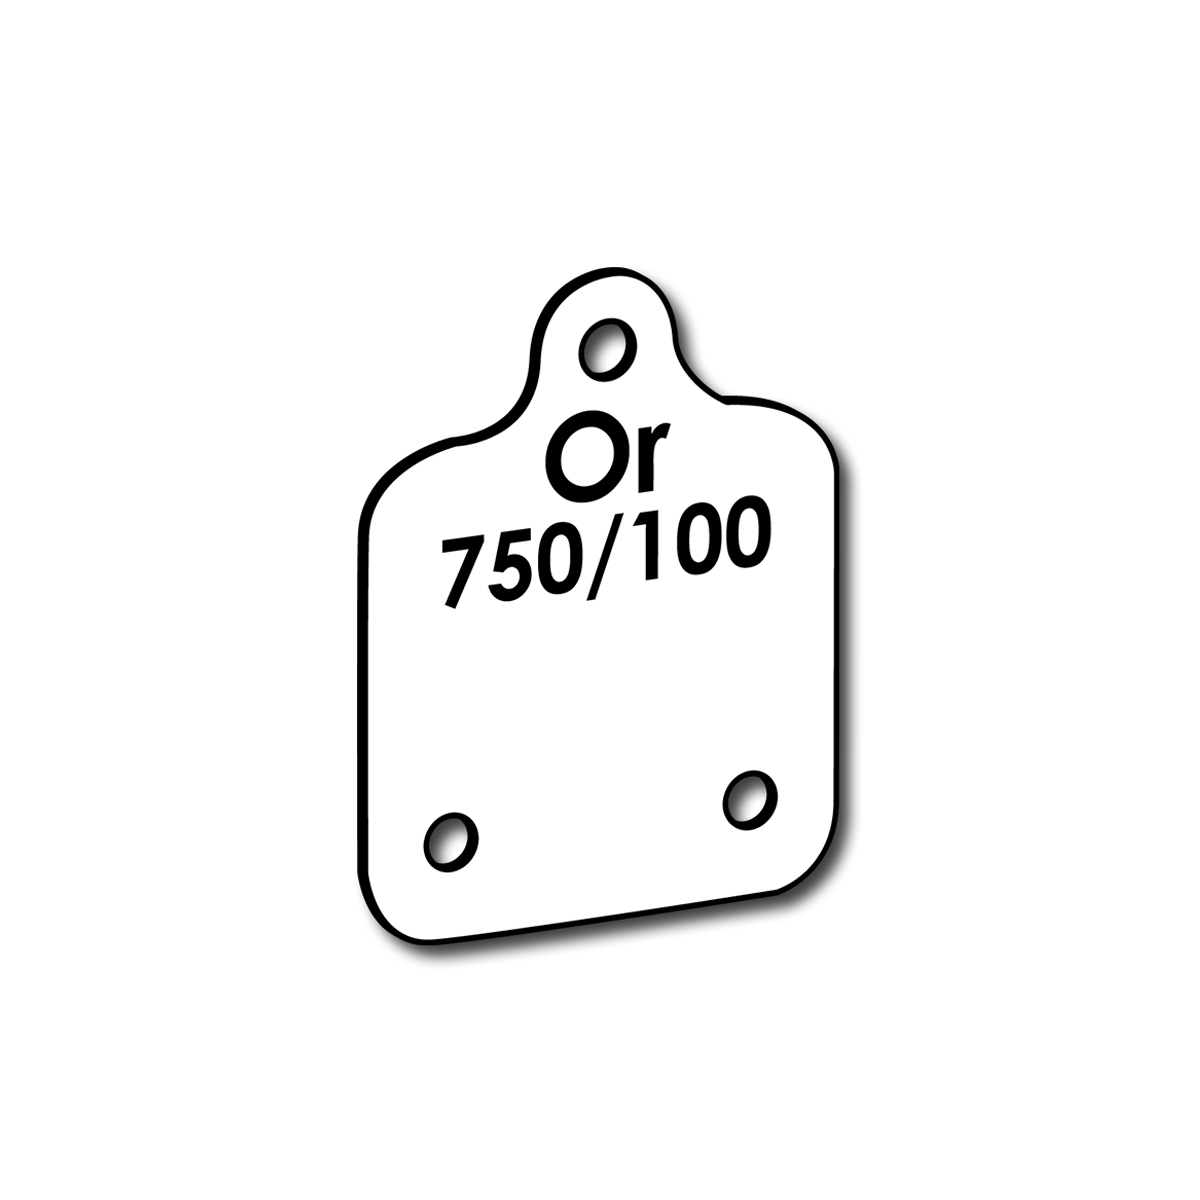 80118-labels-bo-oder